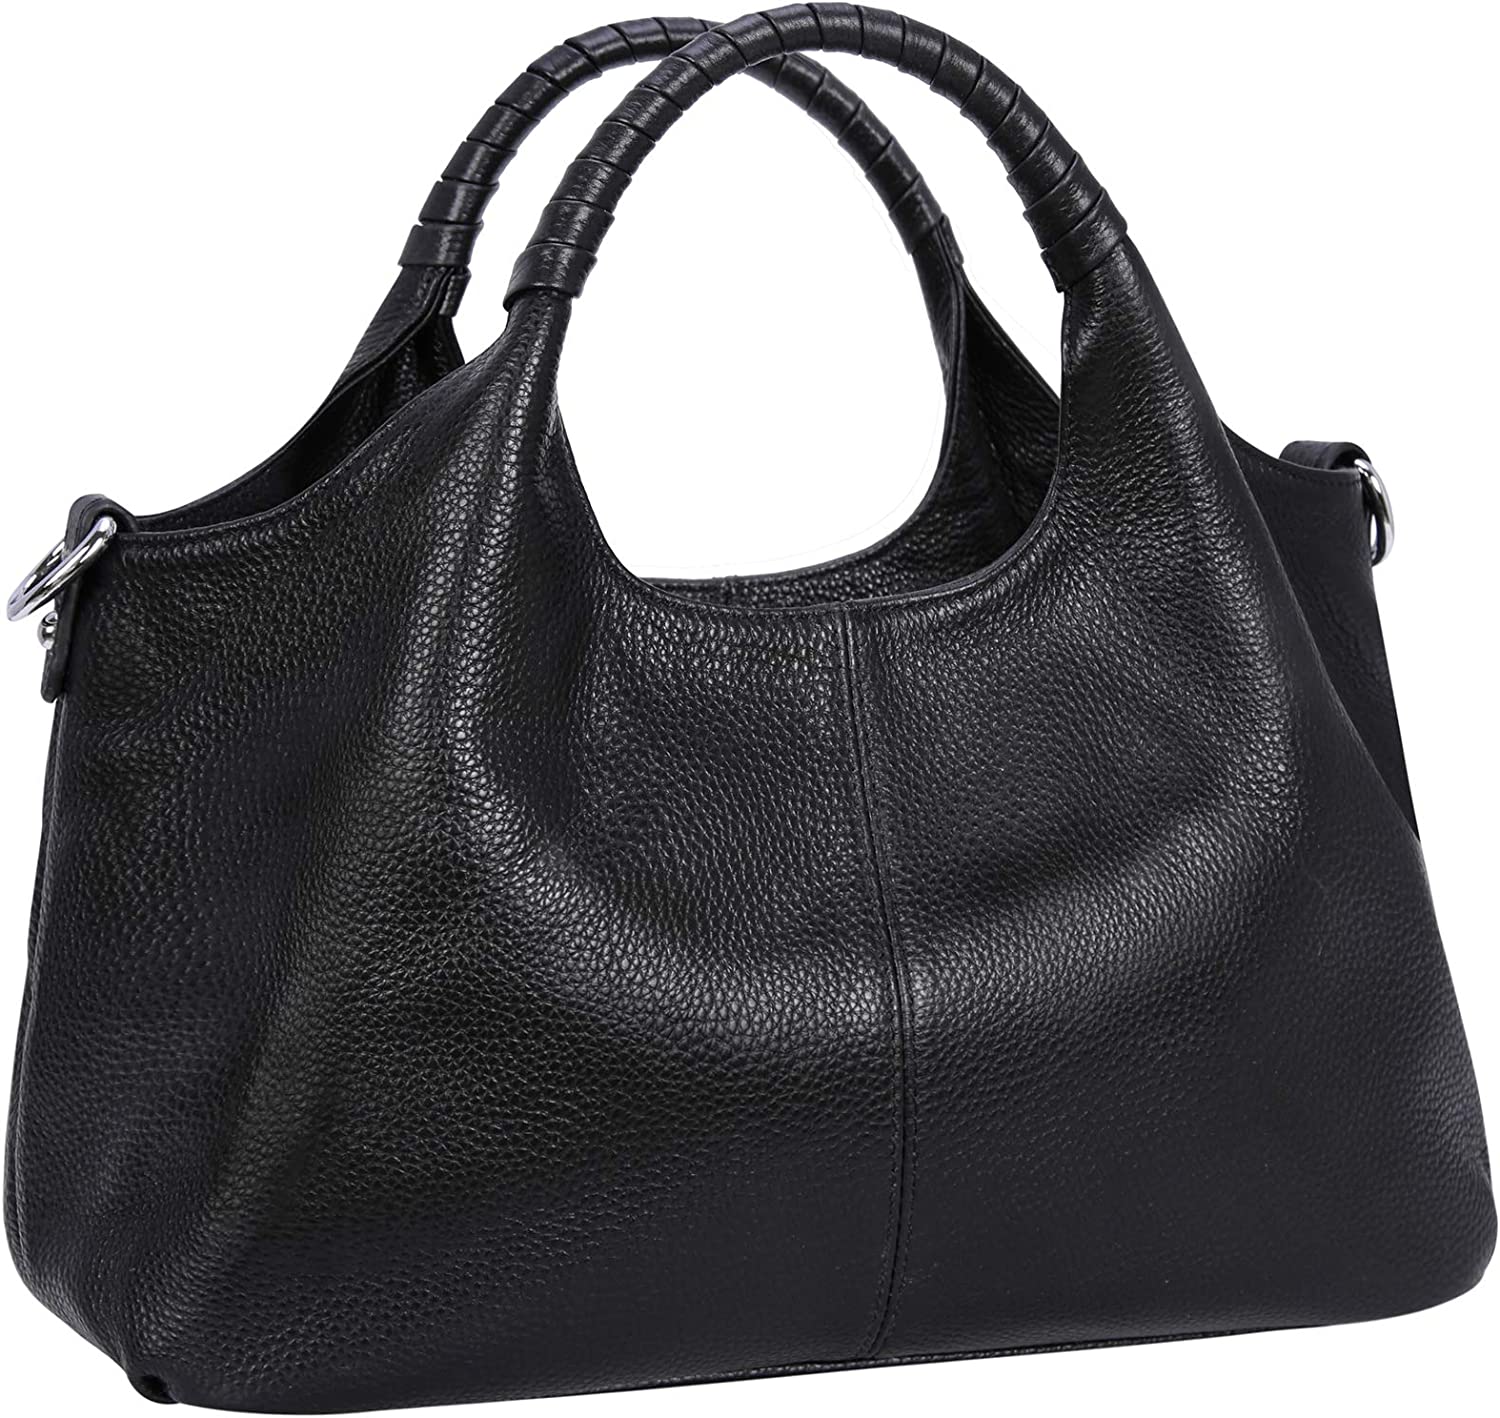 Sexy Dance Women Handbags Genuine Leather Work Tote Shoulder Bag Top Handle Satchel Ladies Hobo Crossbody Bags Black - image 1 of 6